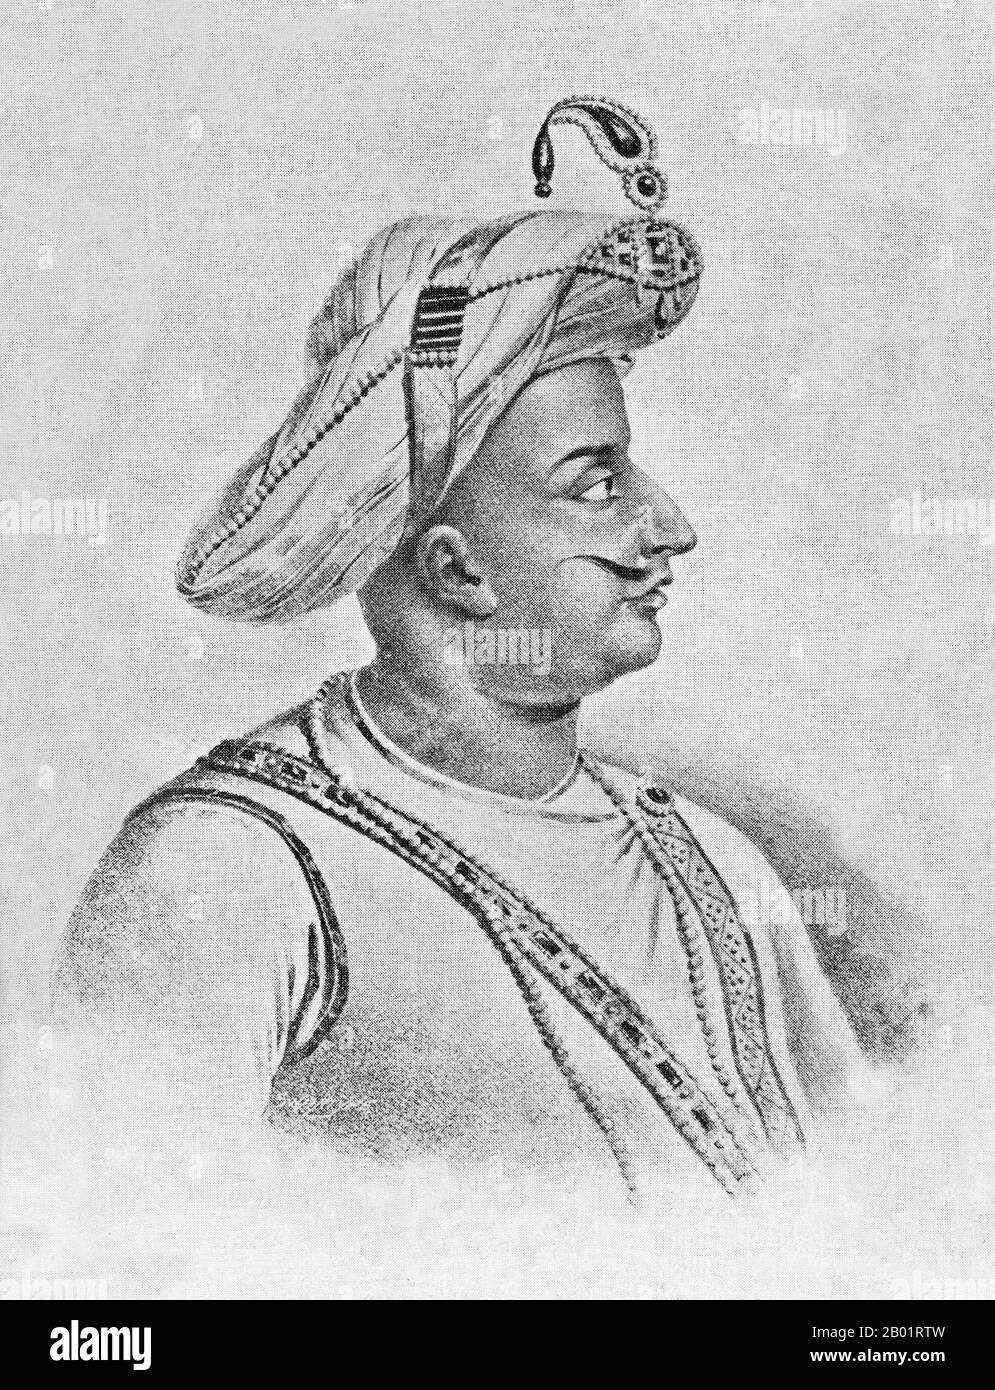 Indien: Tipu Sultan, Eine Andere Ansicht. Skizze aus C. Hayavadana Raos „Geschichte des Mysore, 1399 bis 1799, Band III“, 1792 (für Skizze) und 1943 (für Buch). Tipu Sultan (November 1750 bis 4. Mai 1799), auch bekannt als Tiger von Mysore, war de facto Herrscher des Königreichs Mysore. Er war der Sohn von Hyder Ali, damals Offizier der mysoreanischen Armee, und seiner zweiten Frau Fatima oder Fakhr-un-Nissa. Er erhielt eine Reihe von Ehrentiteln und wurde als Sultan Fateh Ali Khan Shahab, Tipu Saheb, Bahadur Khan Tipu Sultan oder Fatih Ali Khan Tipu Sultan Bahadur bezeichnet. Stockfoto